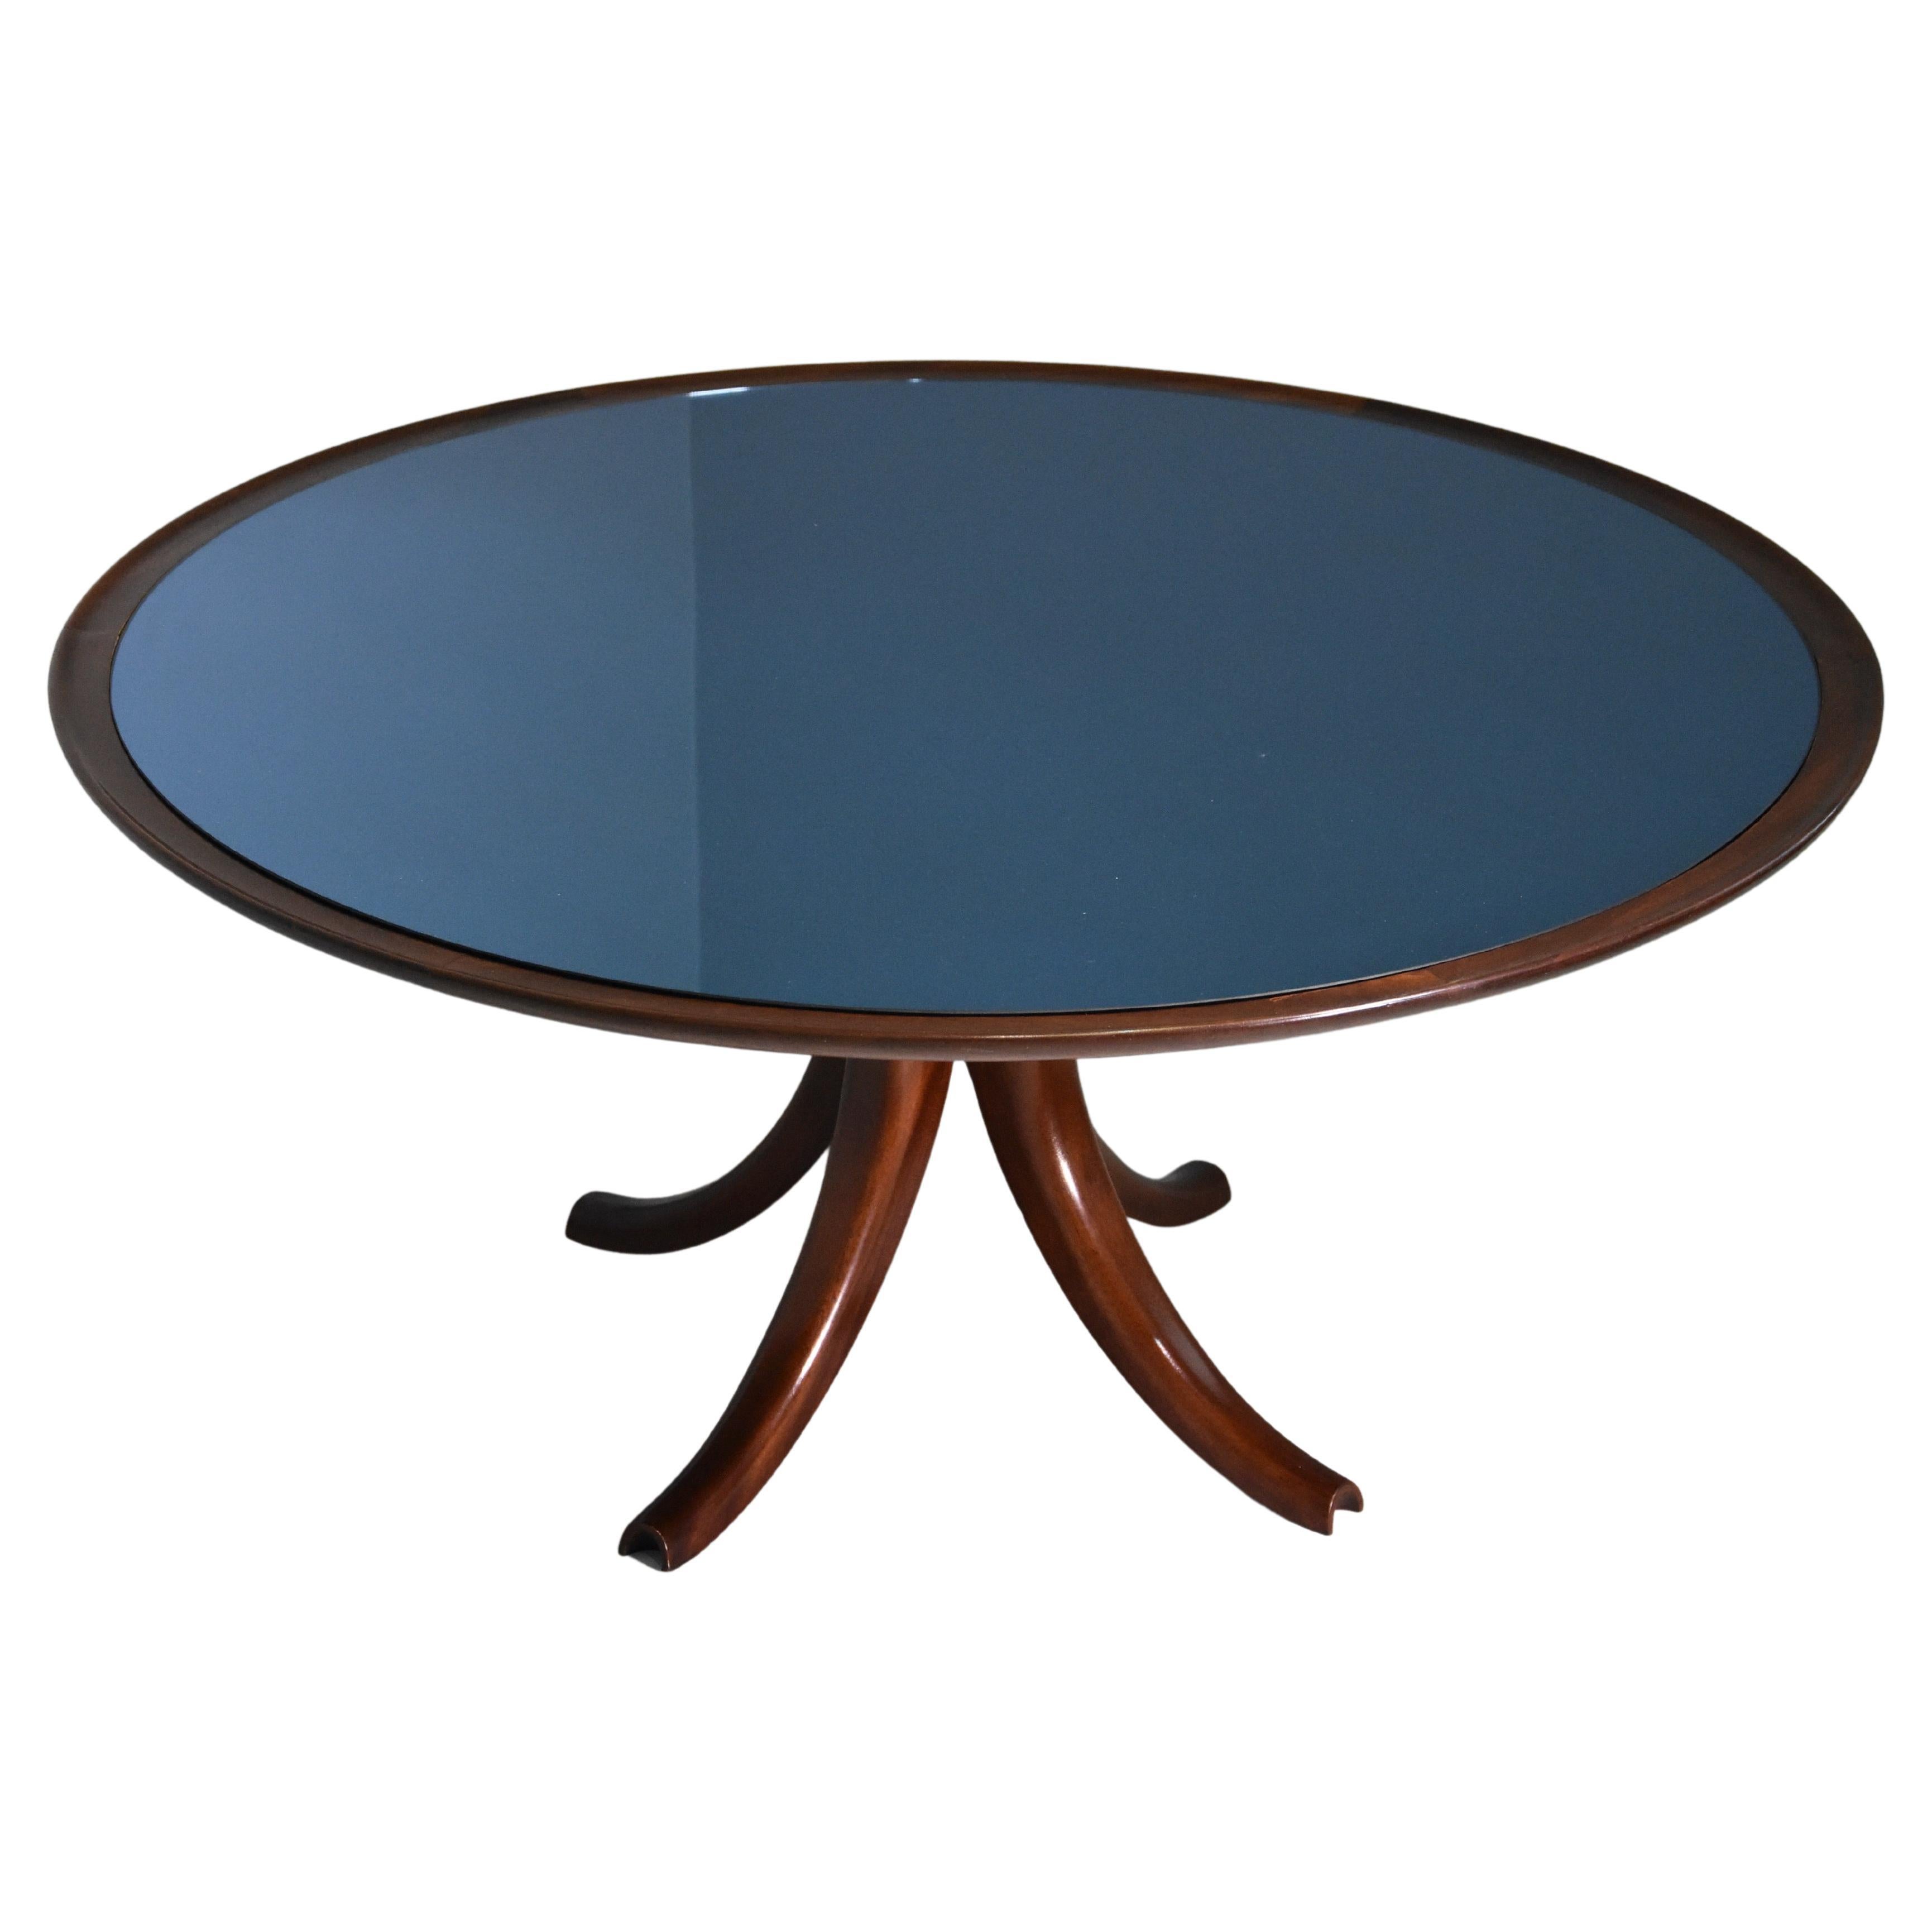 Seltener Variant eines großen Tisches Pietro Chiesa für Fontana Arte 1940 Whit Blue Spiegel